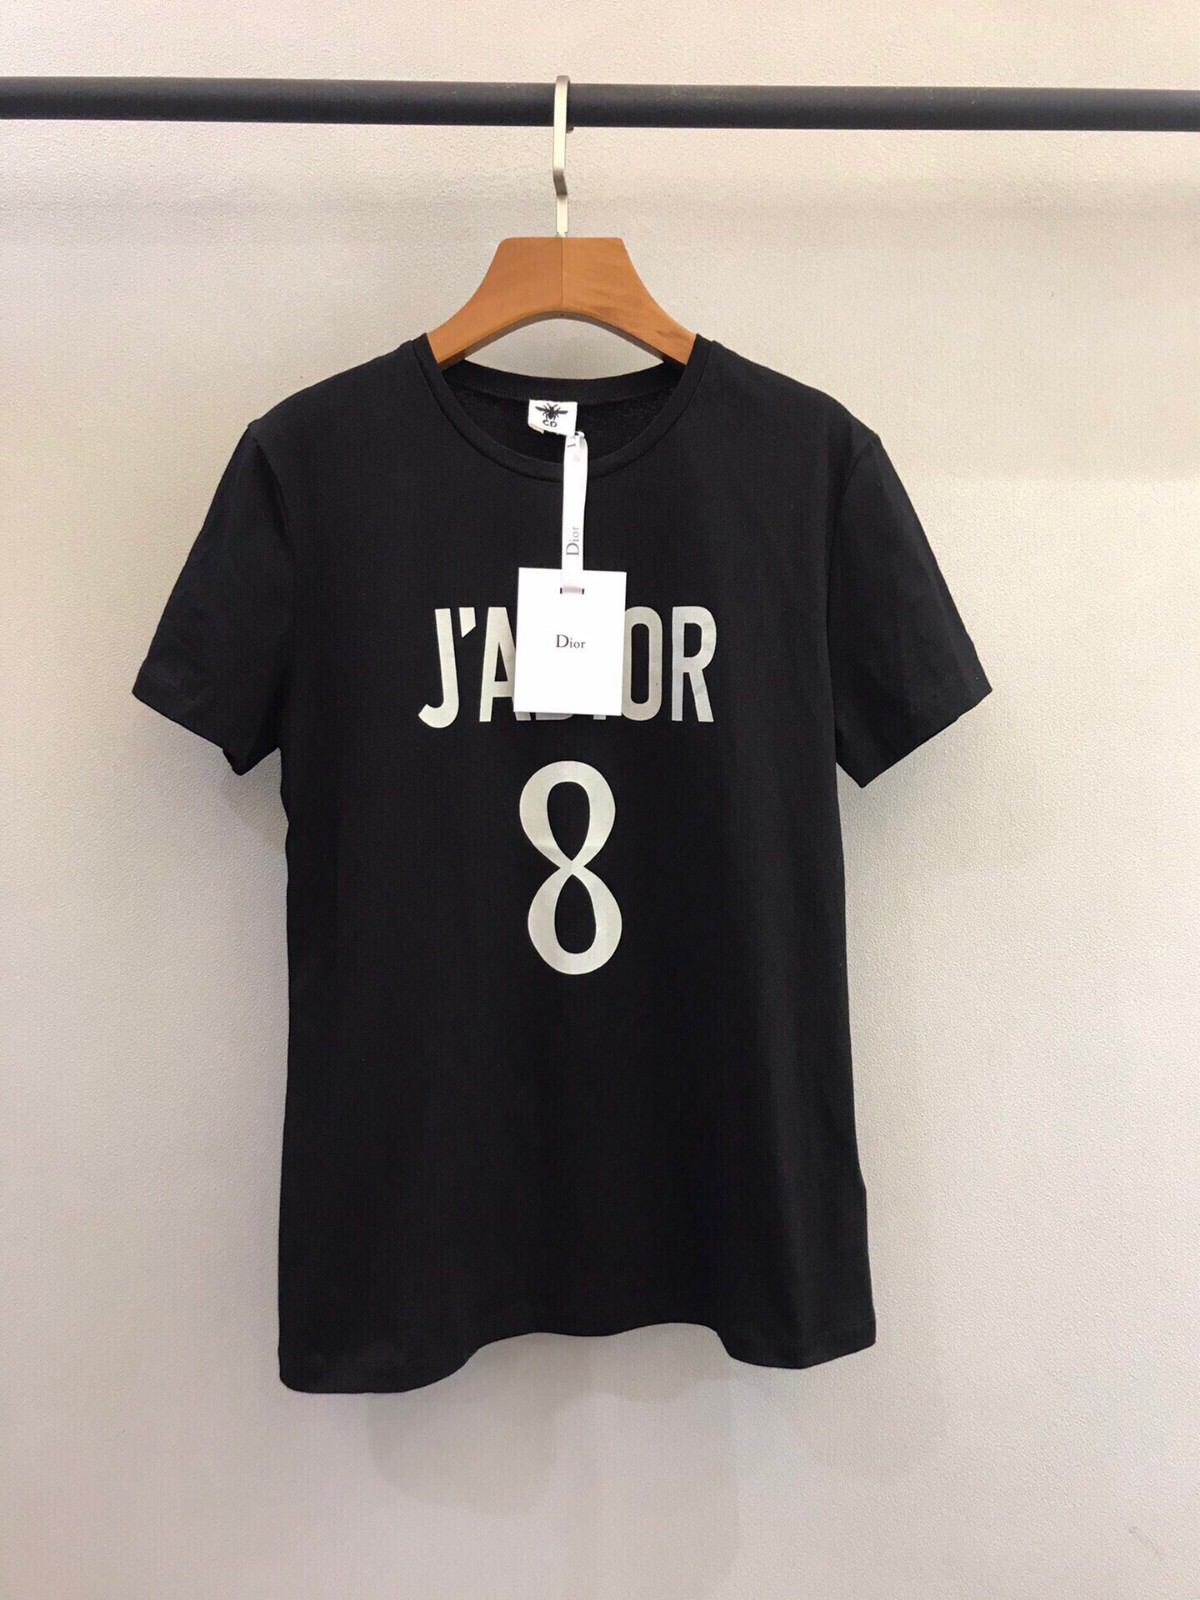 注目アイテム♪定番 人気 J'ADIOR 8 クルーネック クリスチャン・ディオール Tシャツ コピー 半袖 トップス